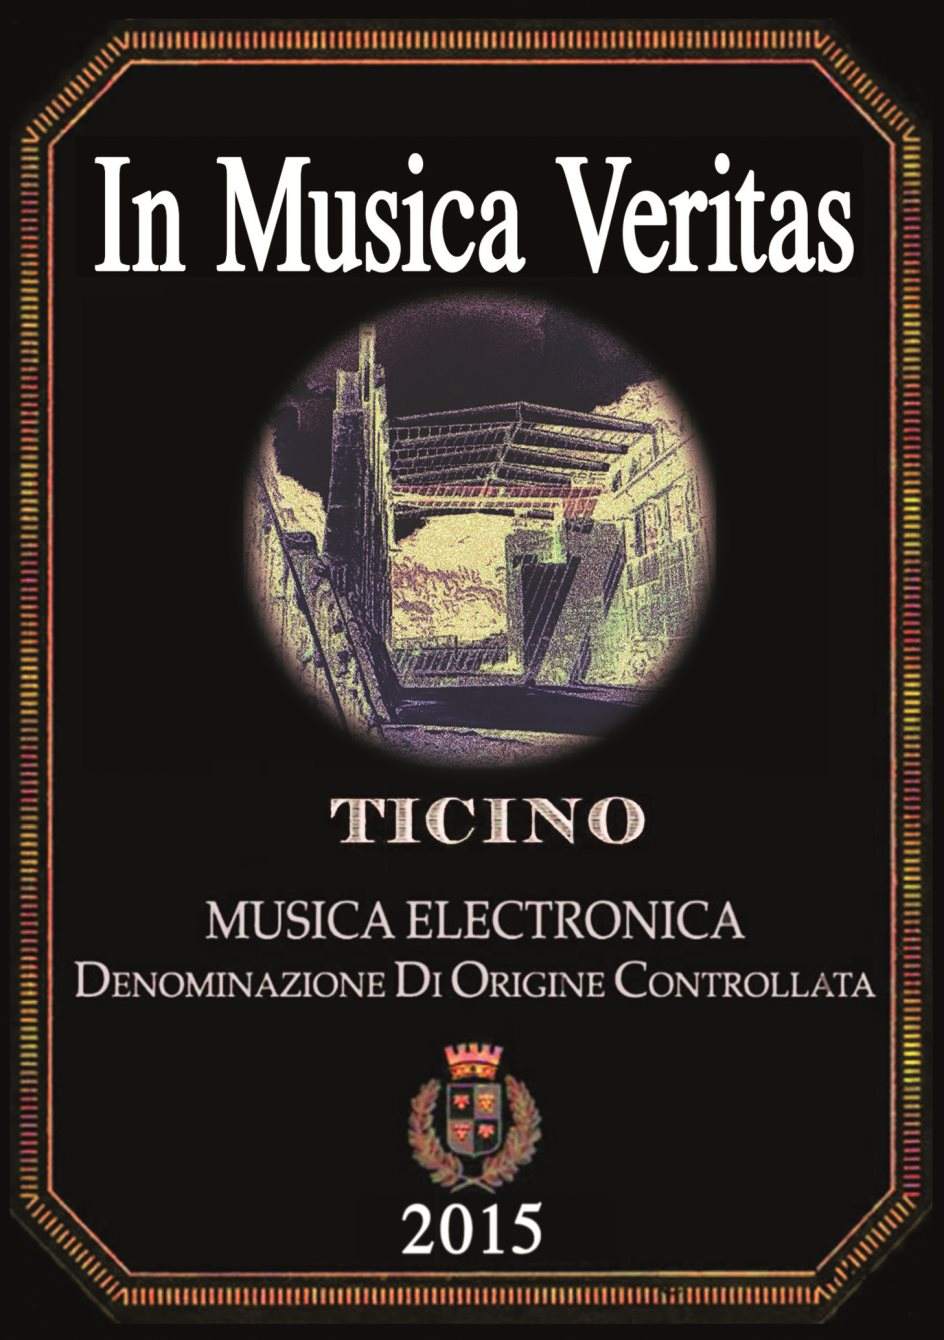 !Canceled! In Musica Veritas pt.2 - フライヤー表